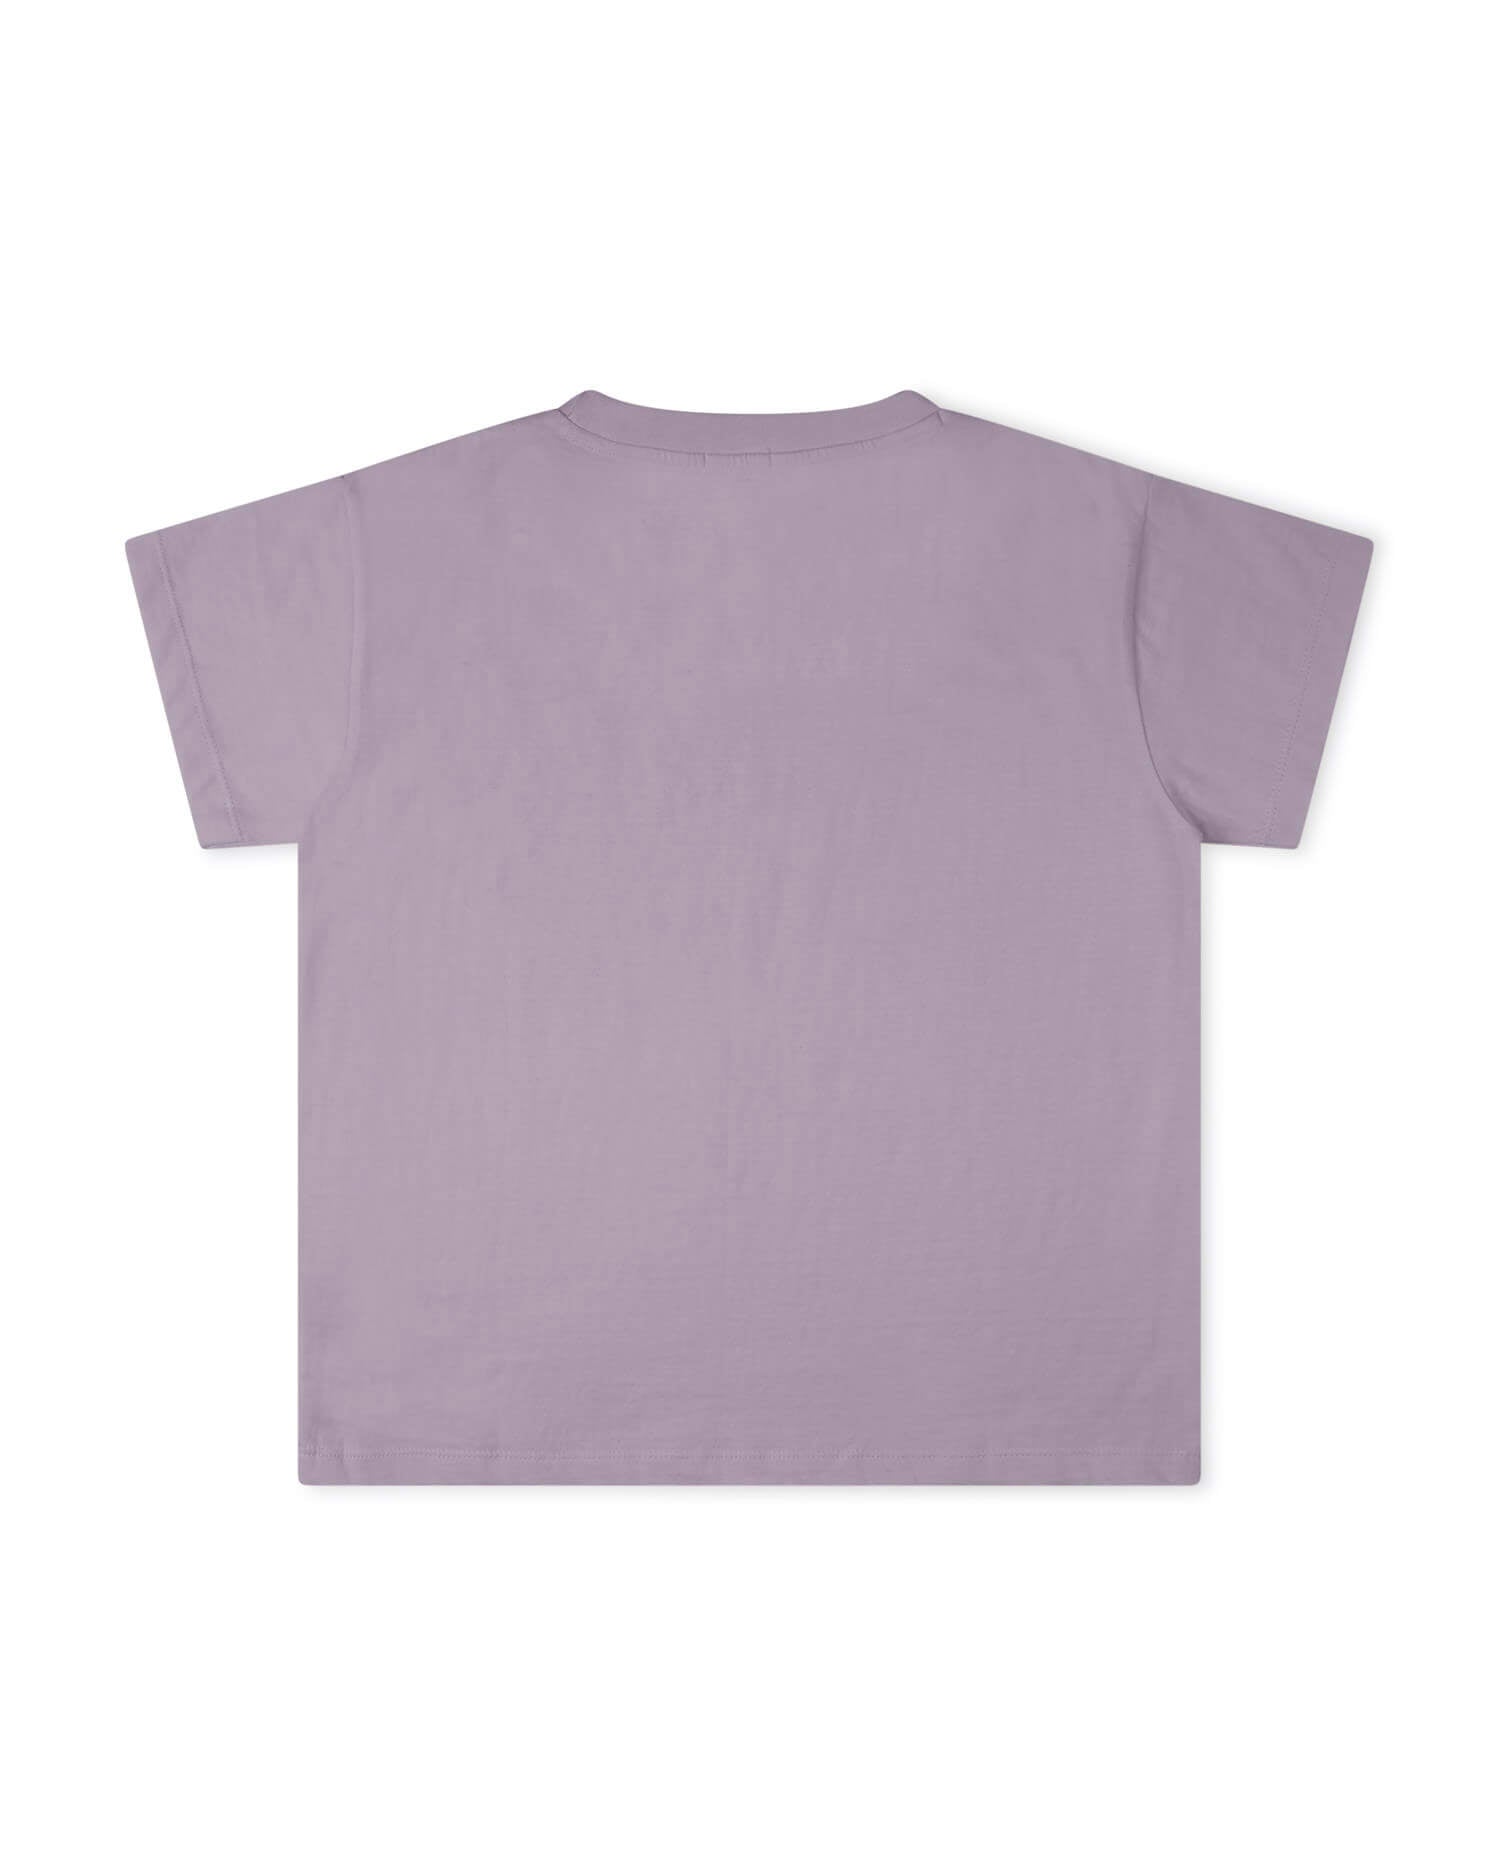 Lila T-Shirt Essential aus 100% Bio-Baumwolle von Matona